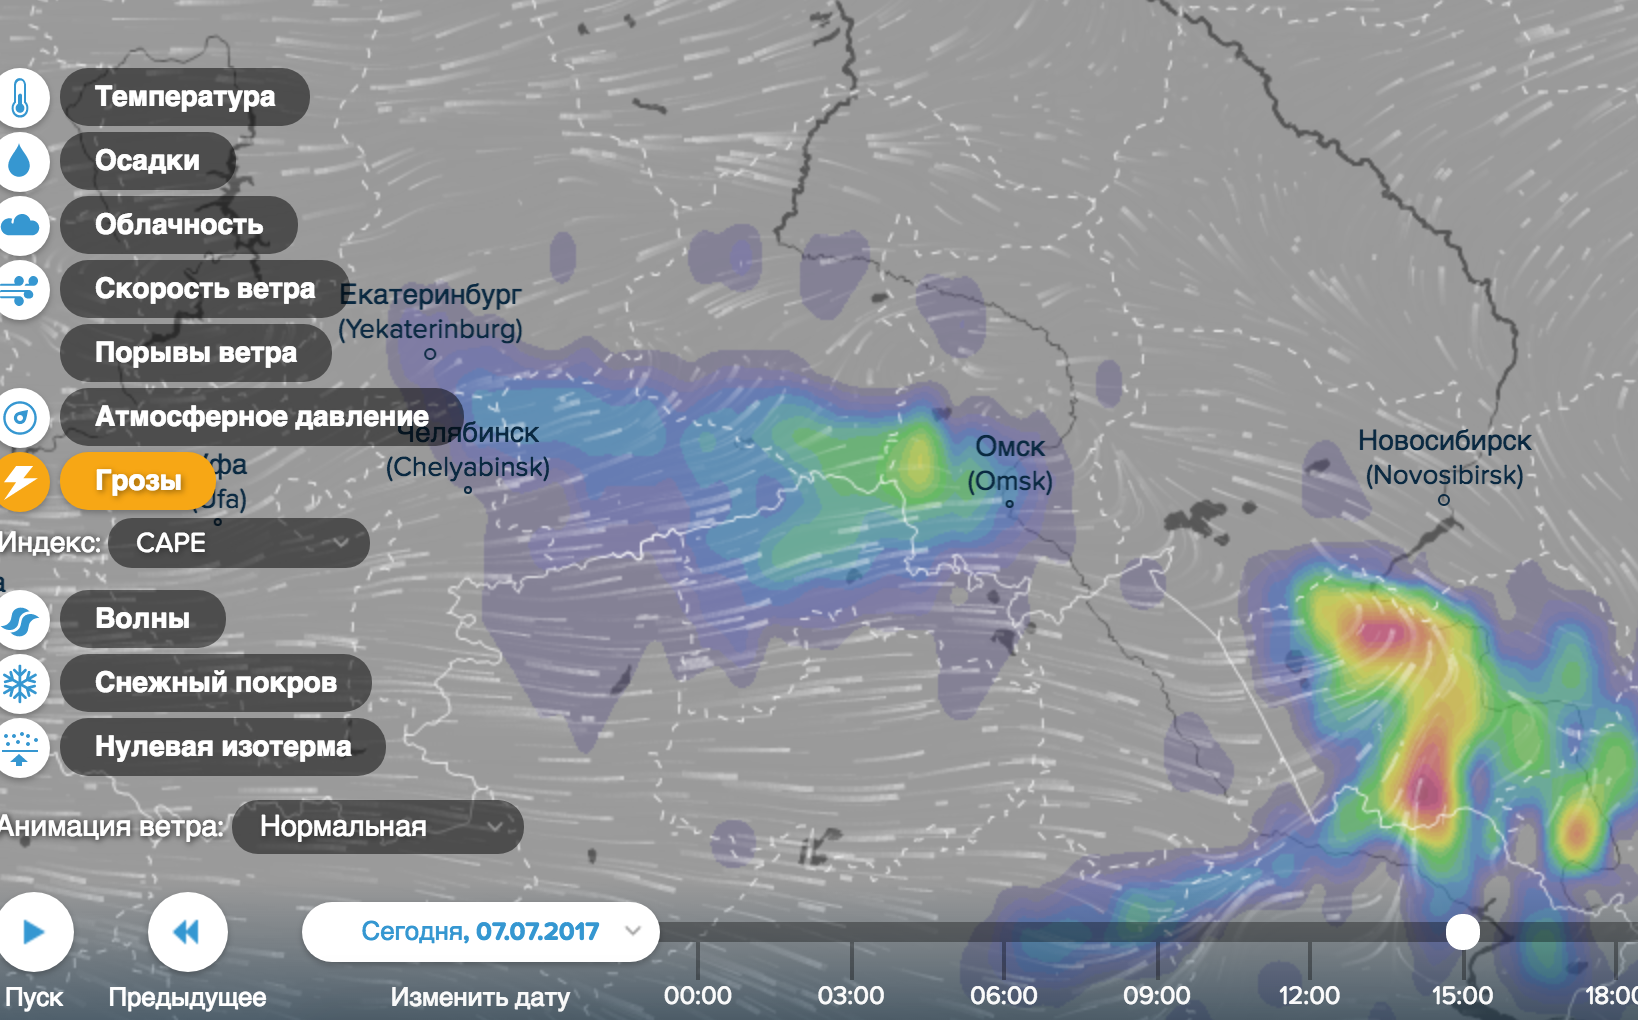 Осадки в реальном времени зеленоград. Карта погоды. Облачность на карте в реальном времени. Погодная карта России.